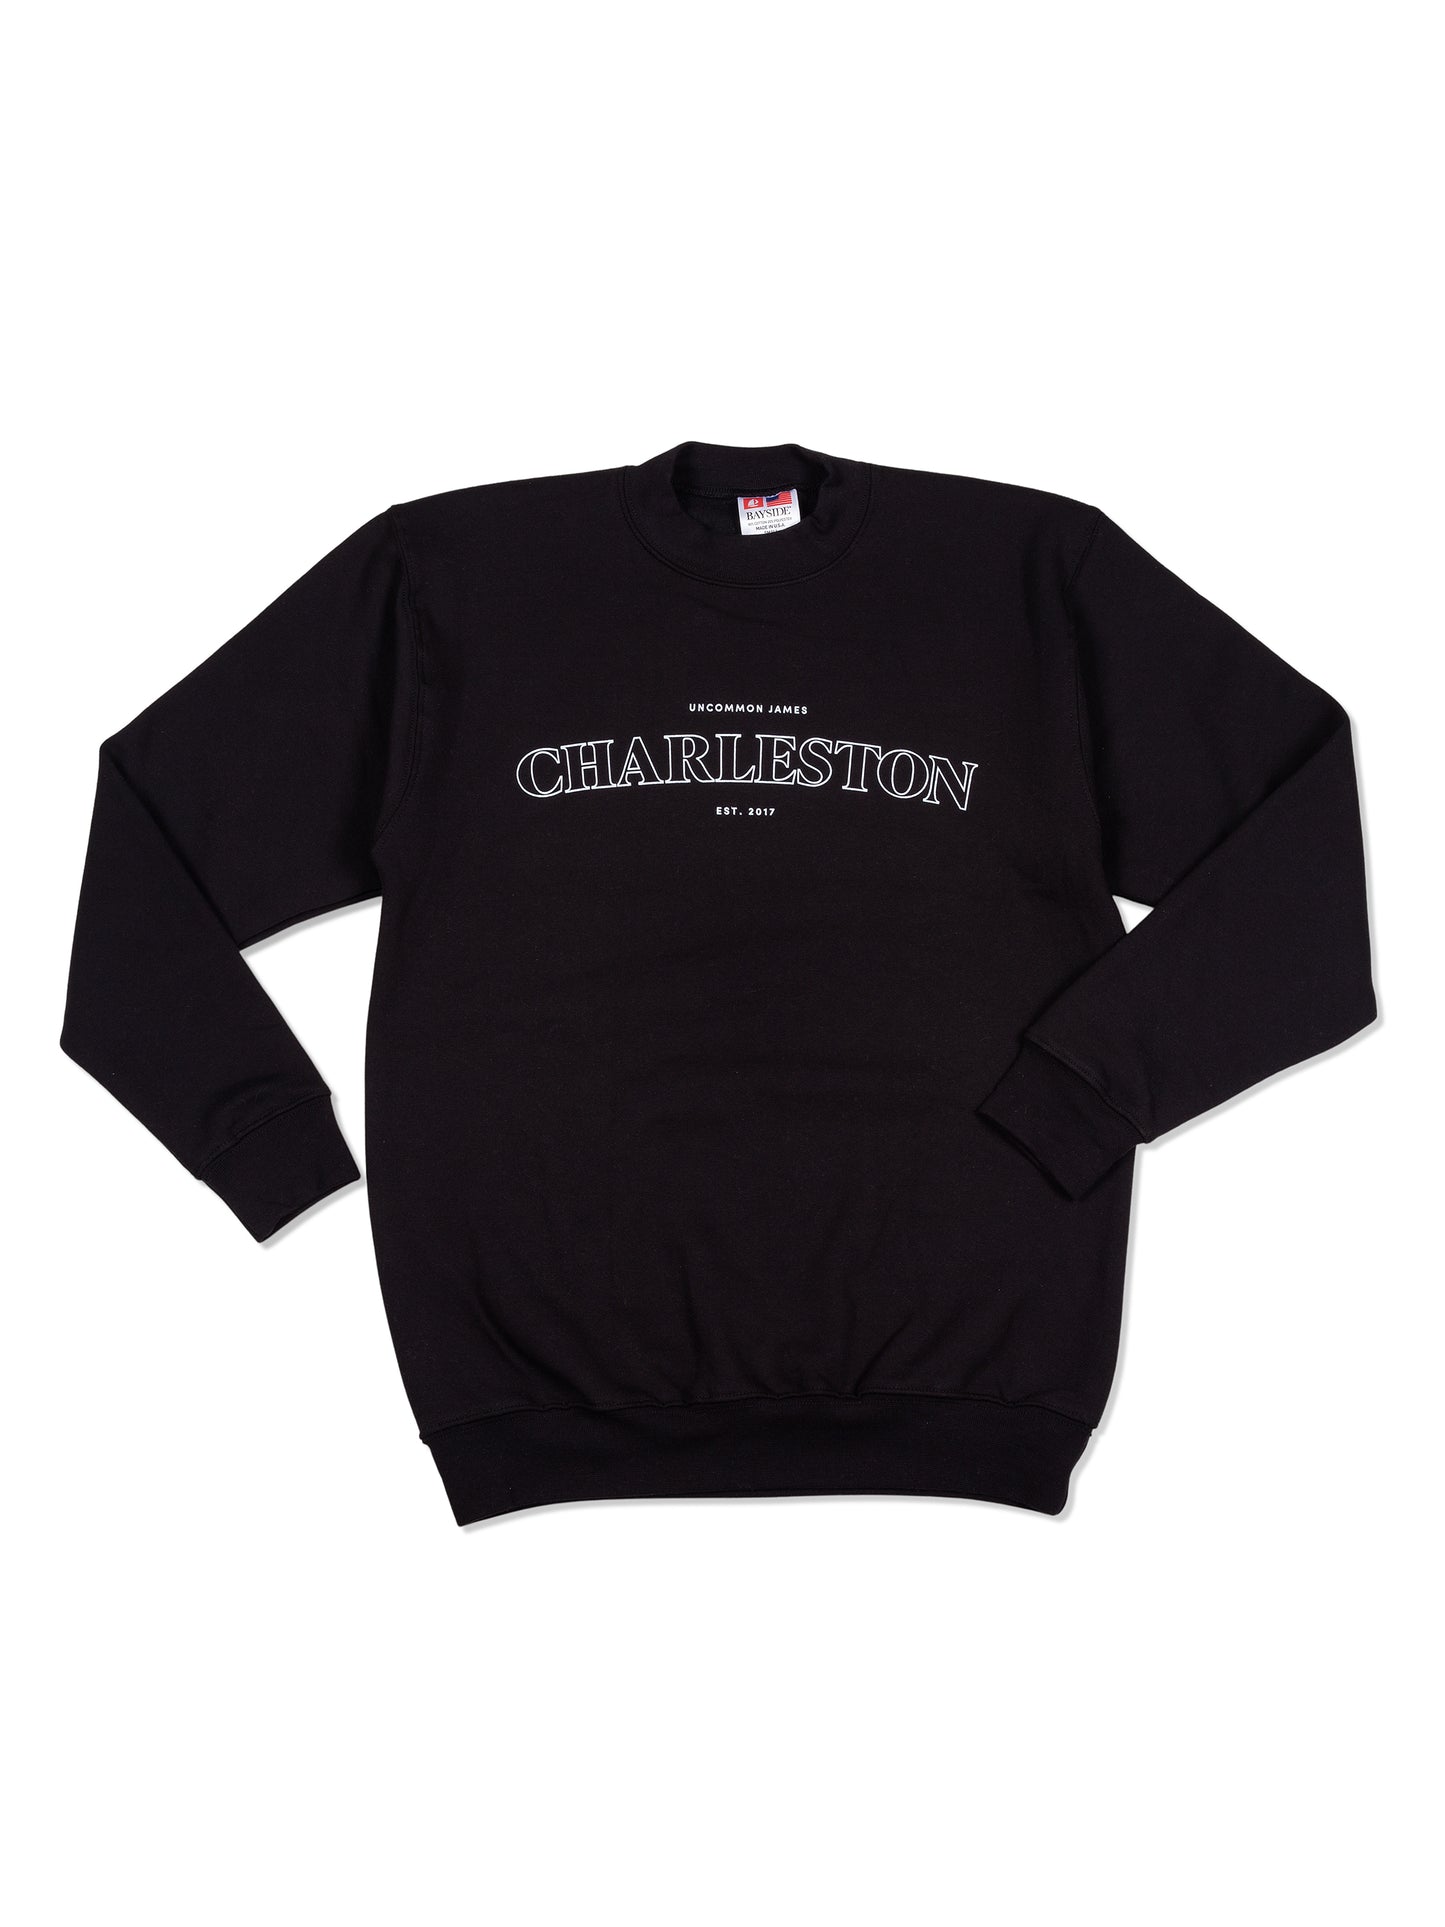 Charleston Sweatshirt | Black | Product Image | Uncommon Lifestyle